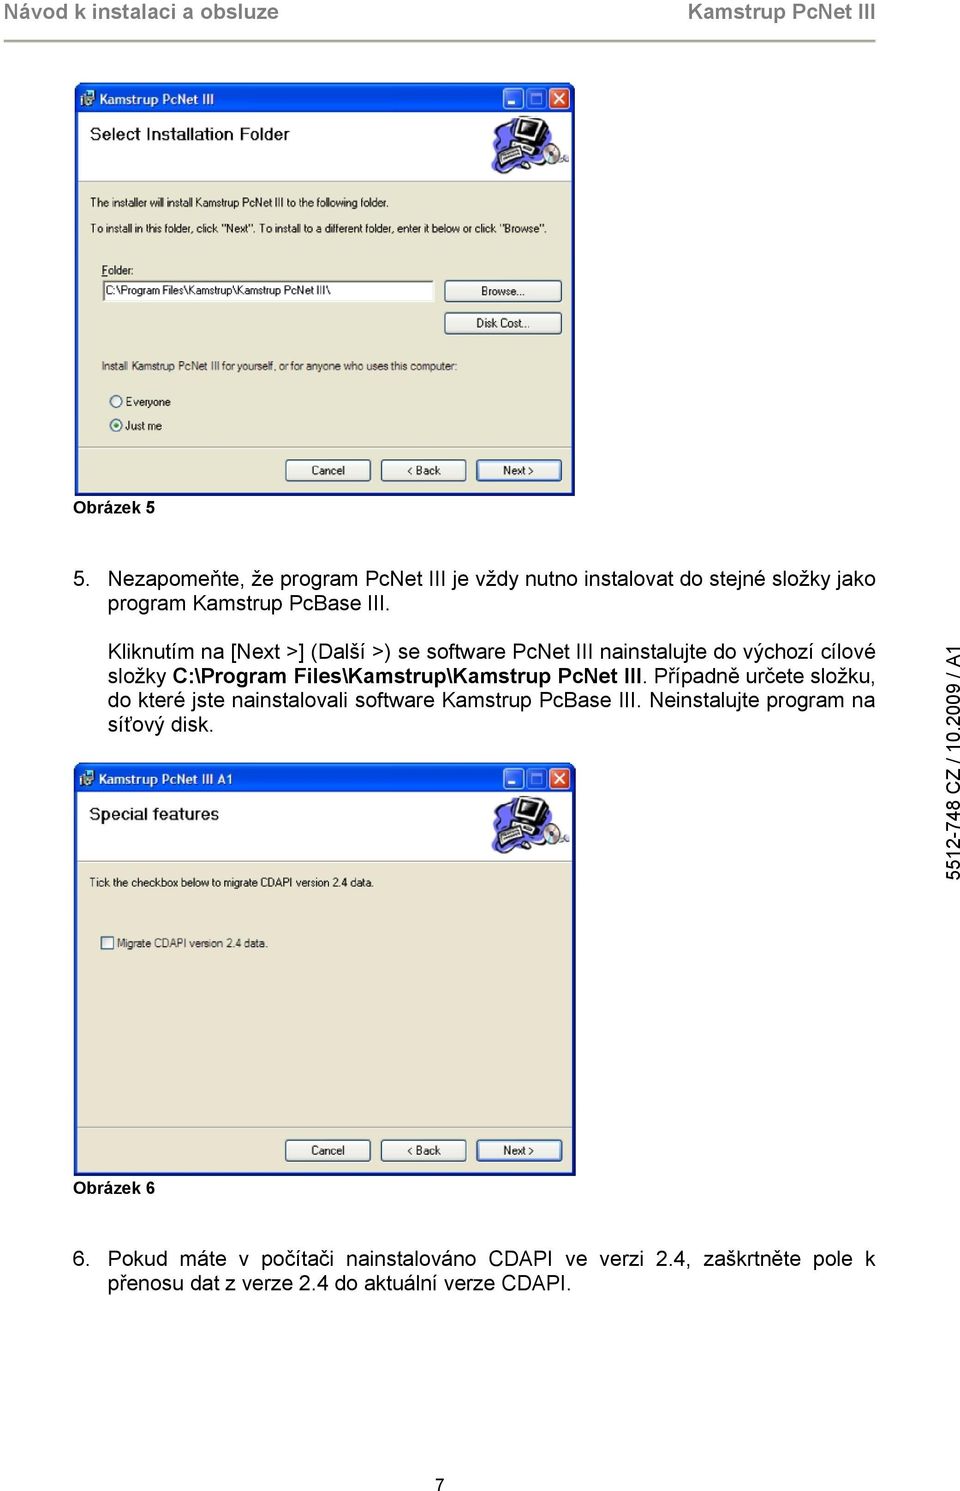 Případně určete složku, do které jste nainstalovali software Kamstrup PcBase III. Neinstalujte program na síťový disk.